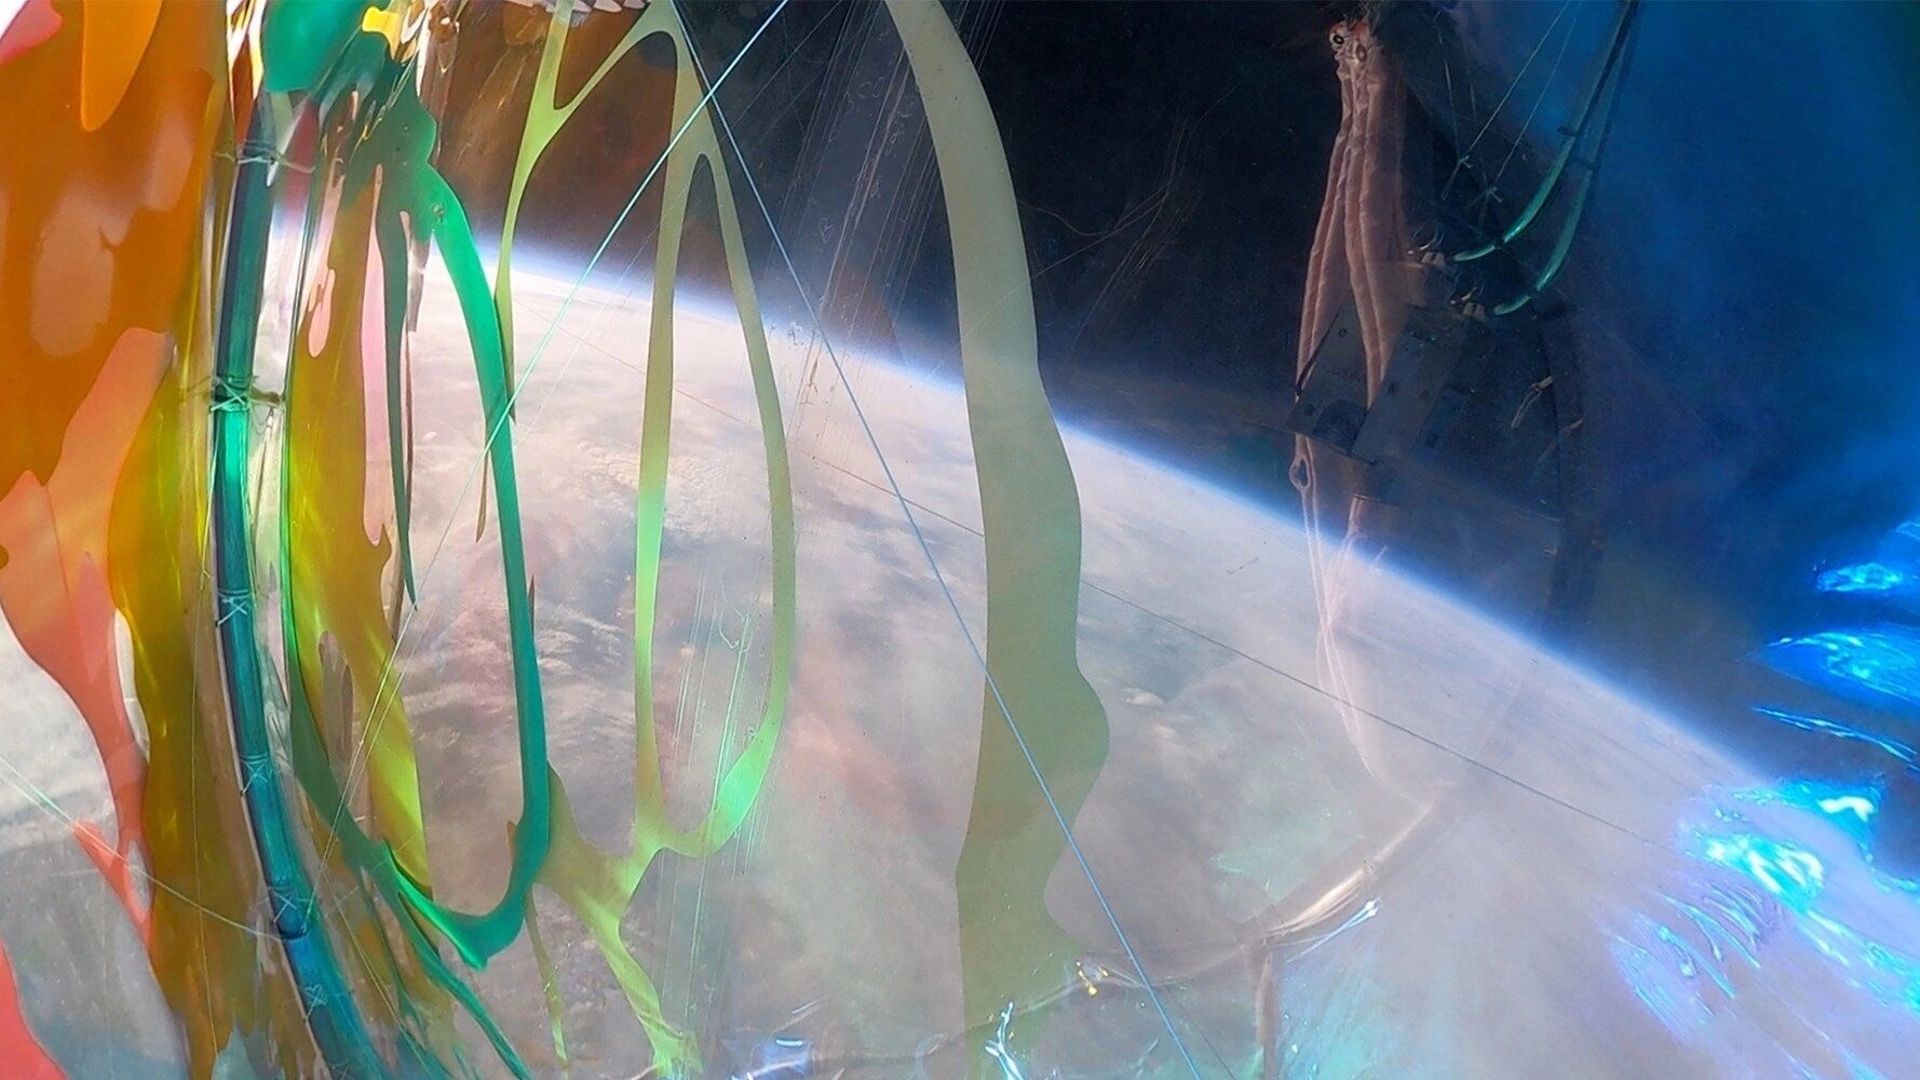 Le collectif Beyond Earth a conçu "Living Light" pour explorer les liens entre notre planète bleue et l’infinité de l’espace.